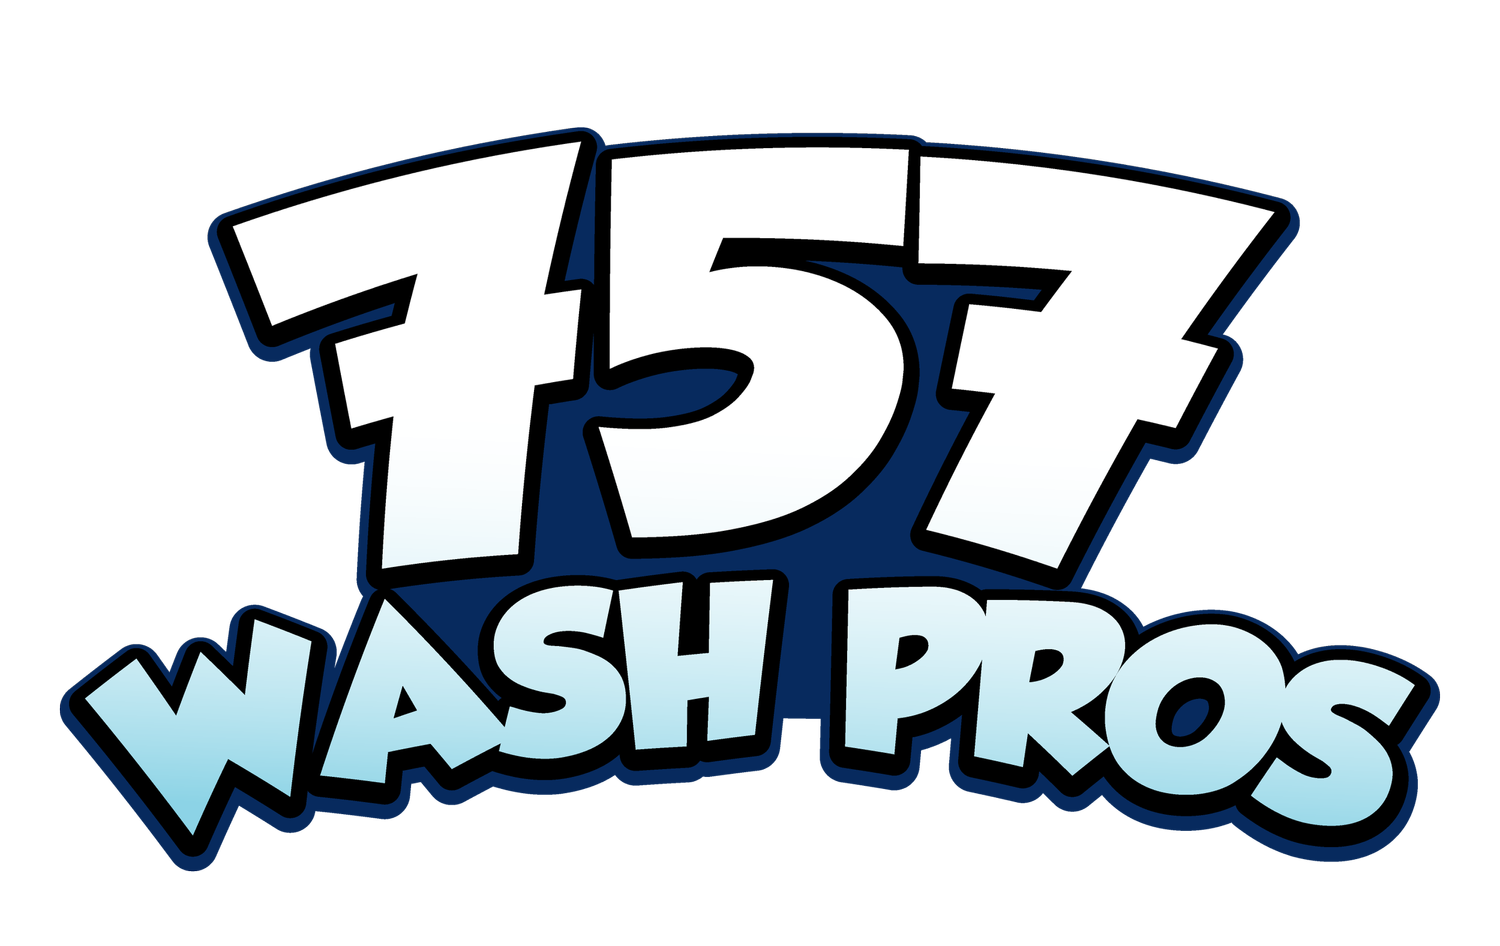 757 Wash Pros